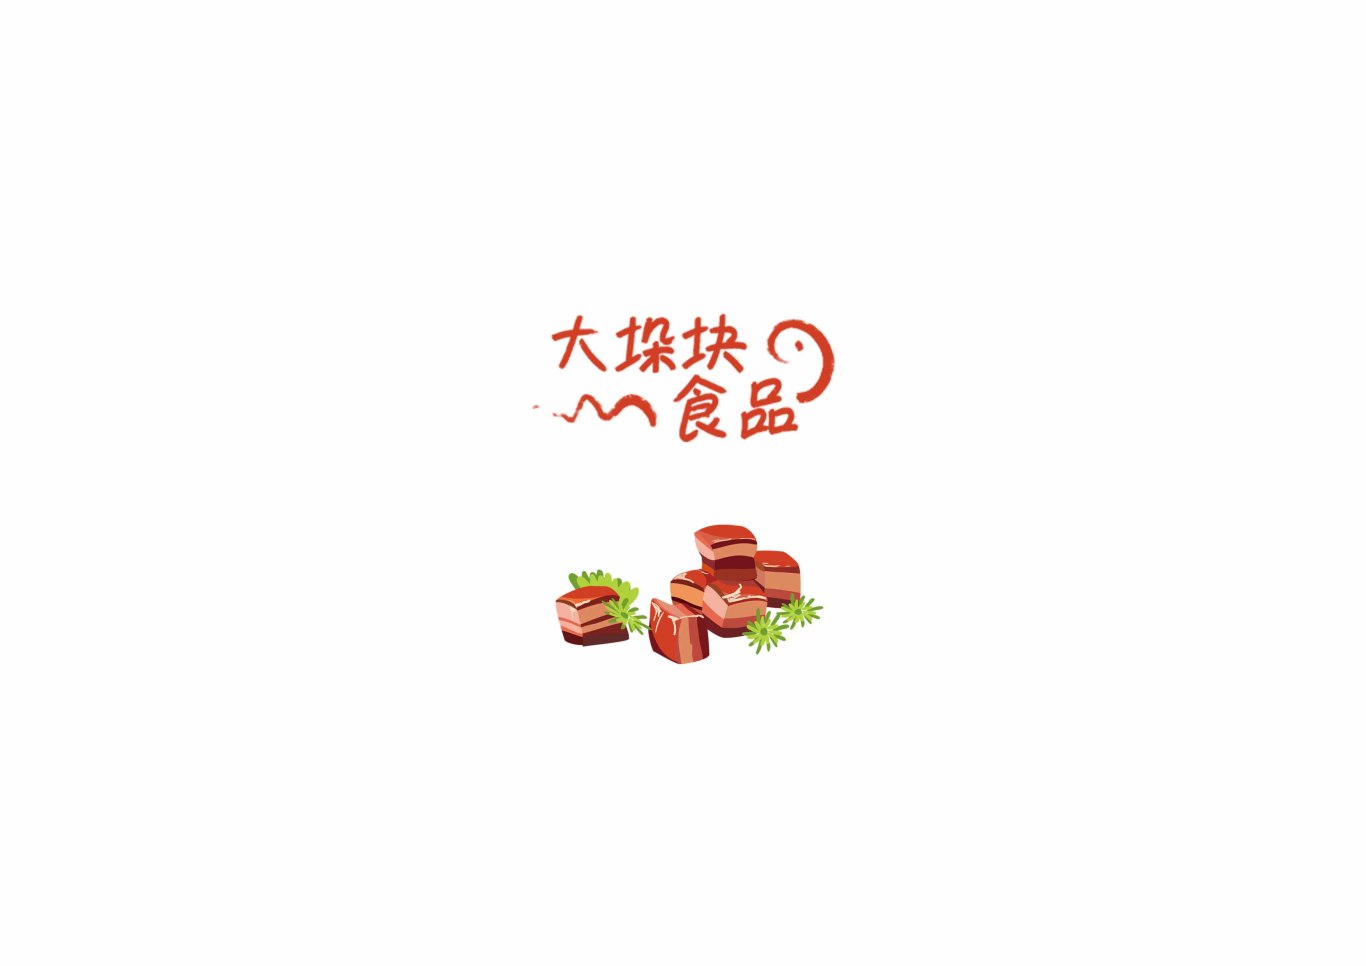 肉制品系列包装插画图0